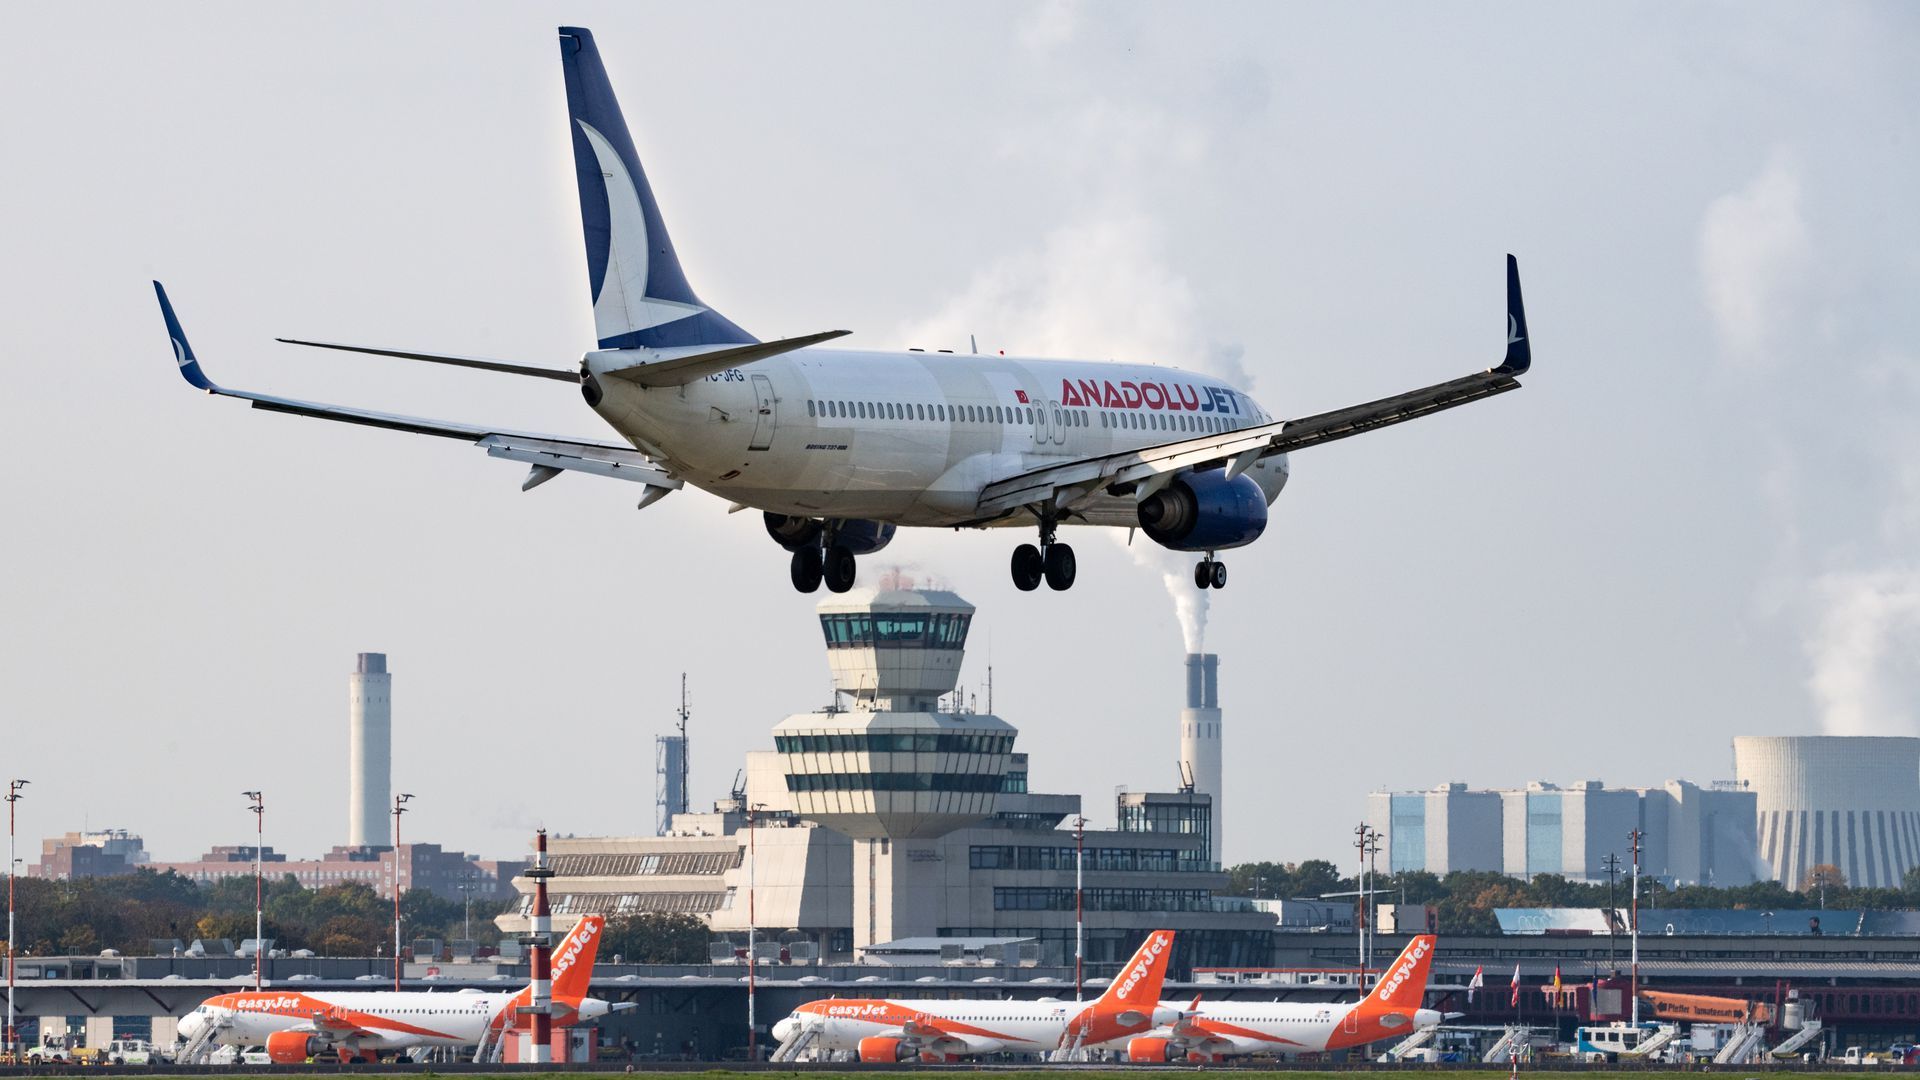 A passenger jet lands at Berlin Tegel Airport.